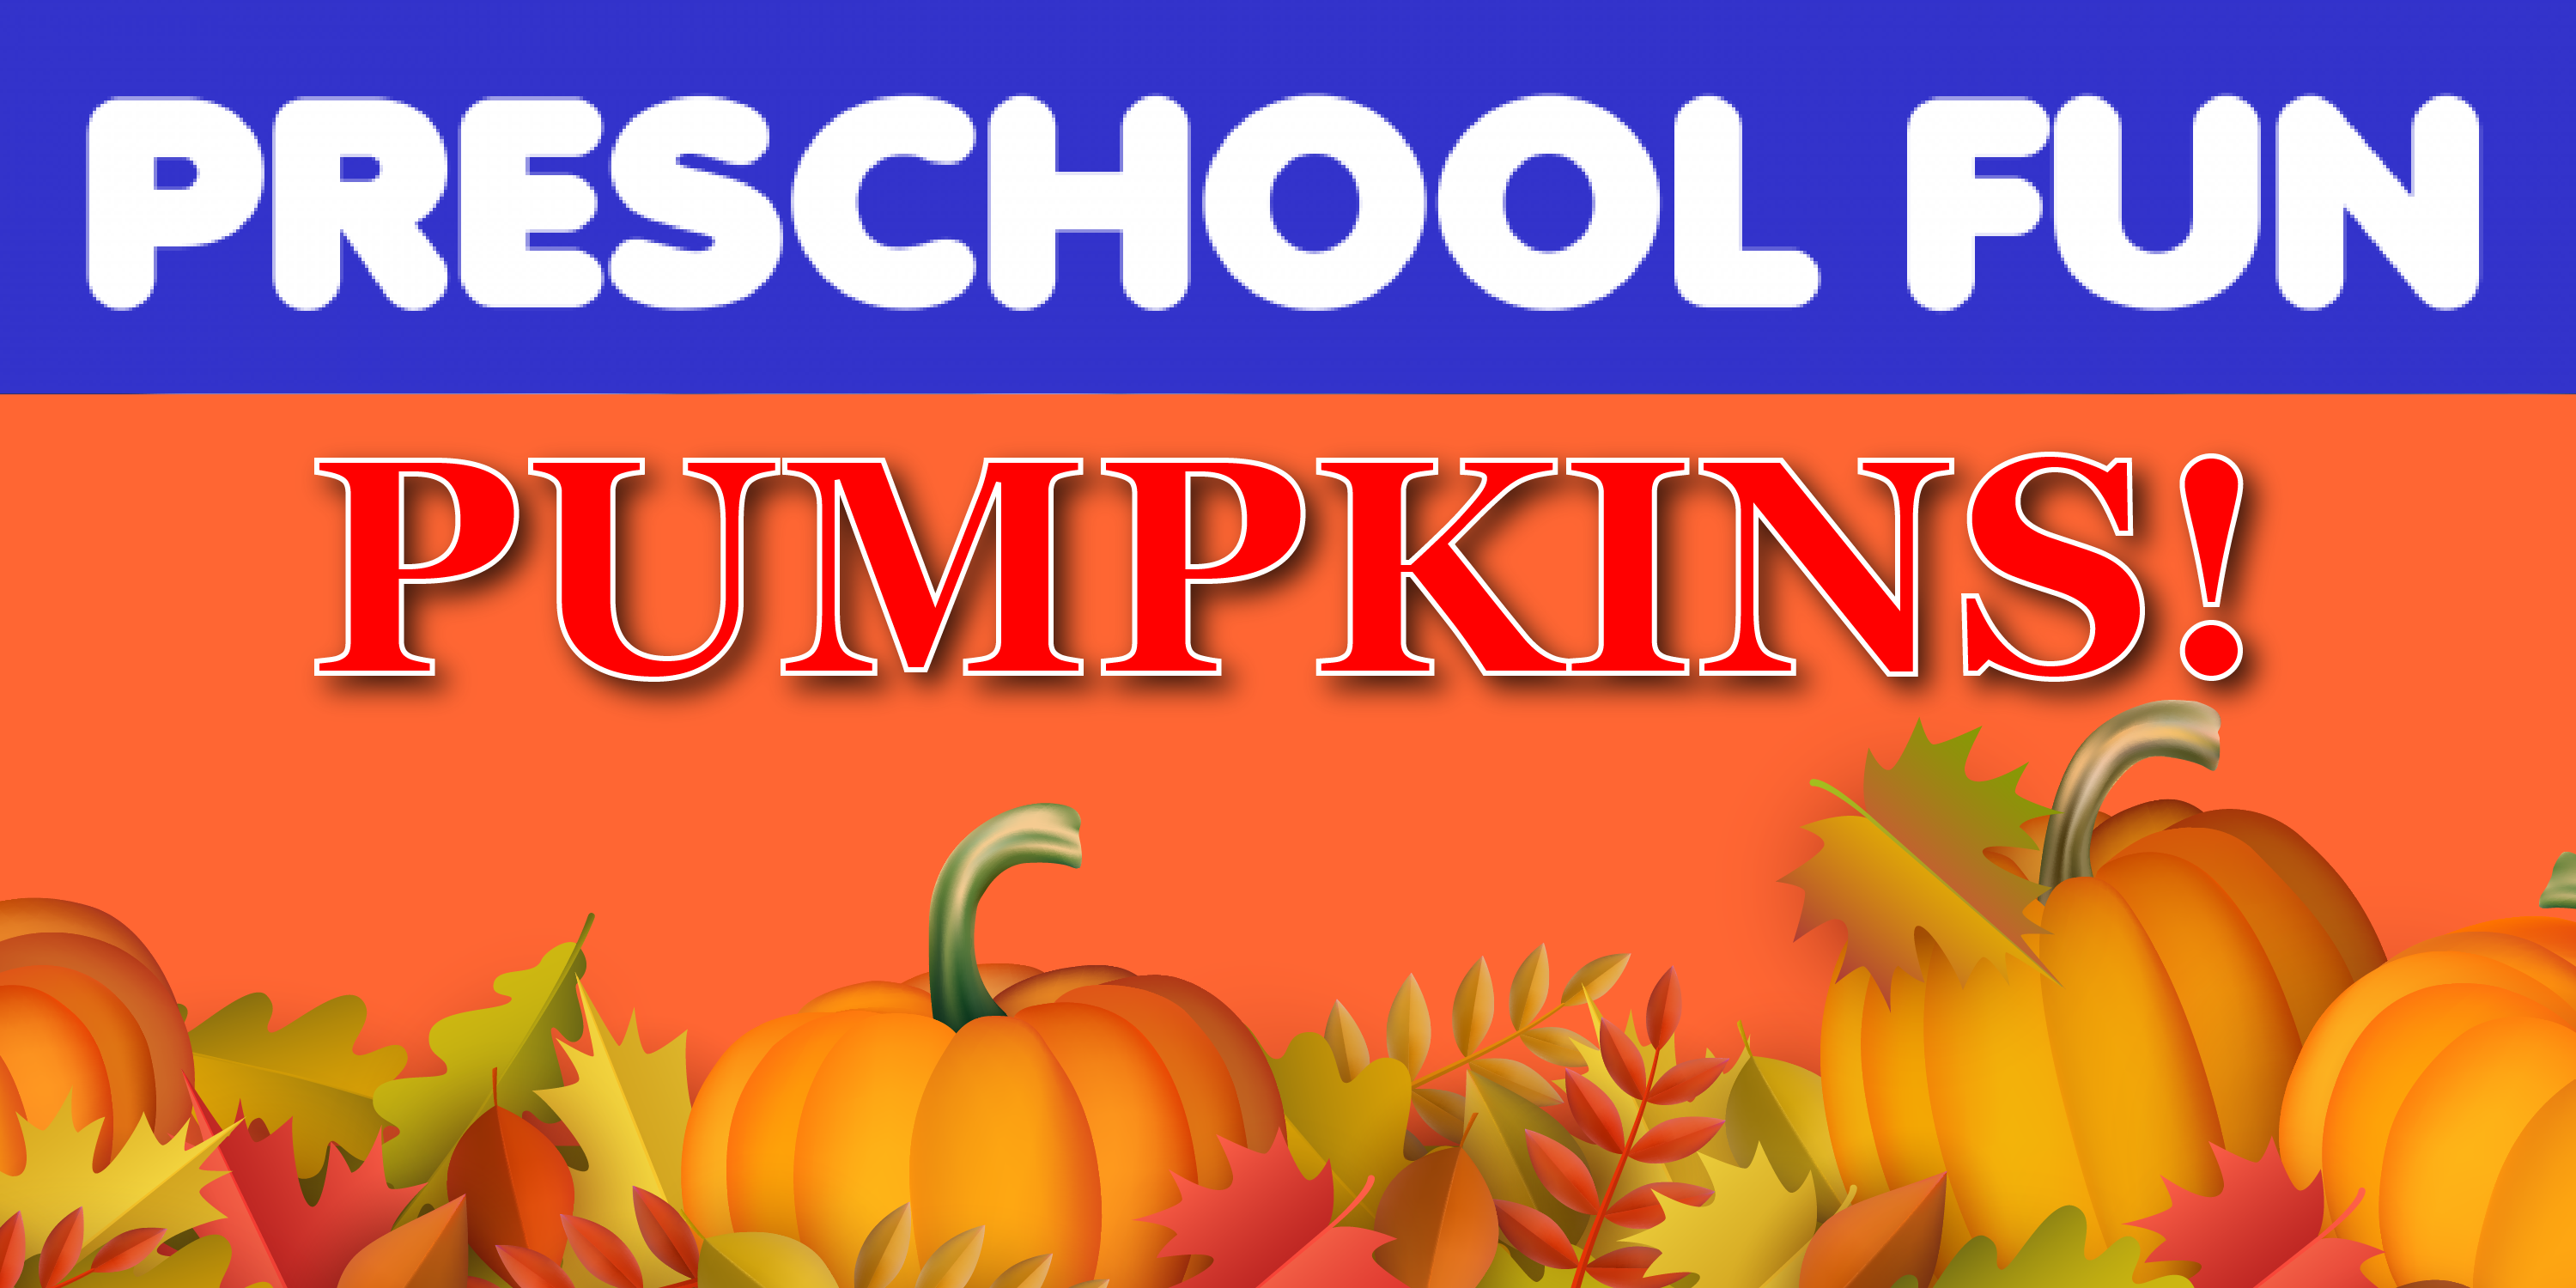 Preschool Fun: Pumpkins!